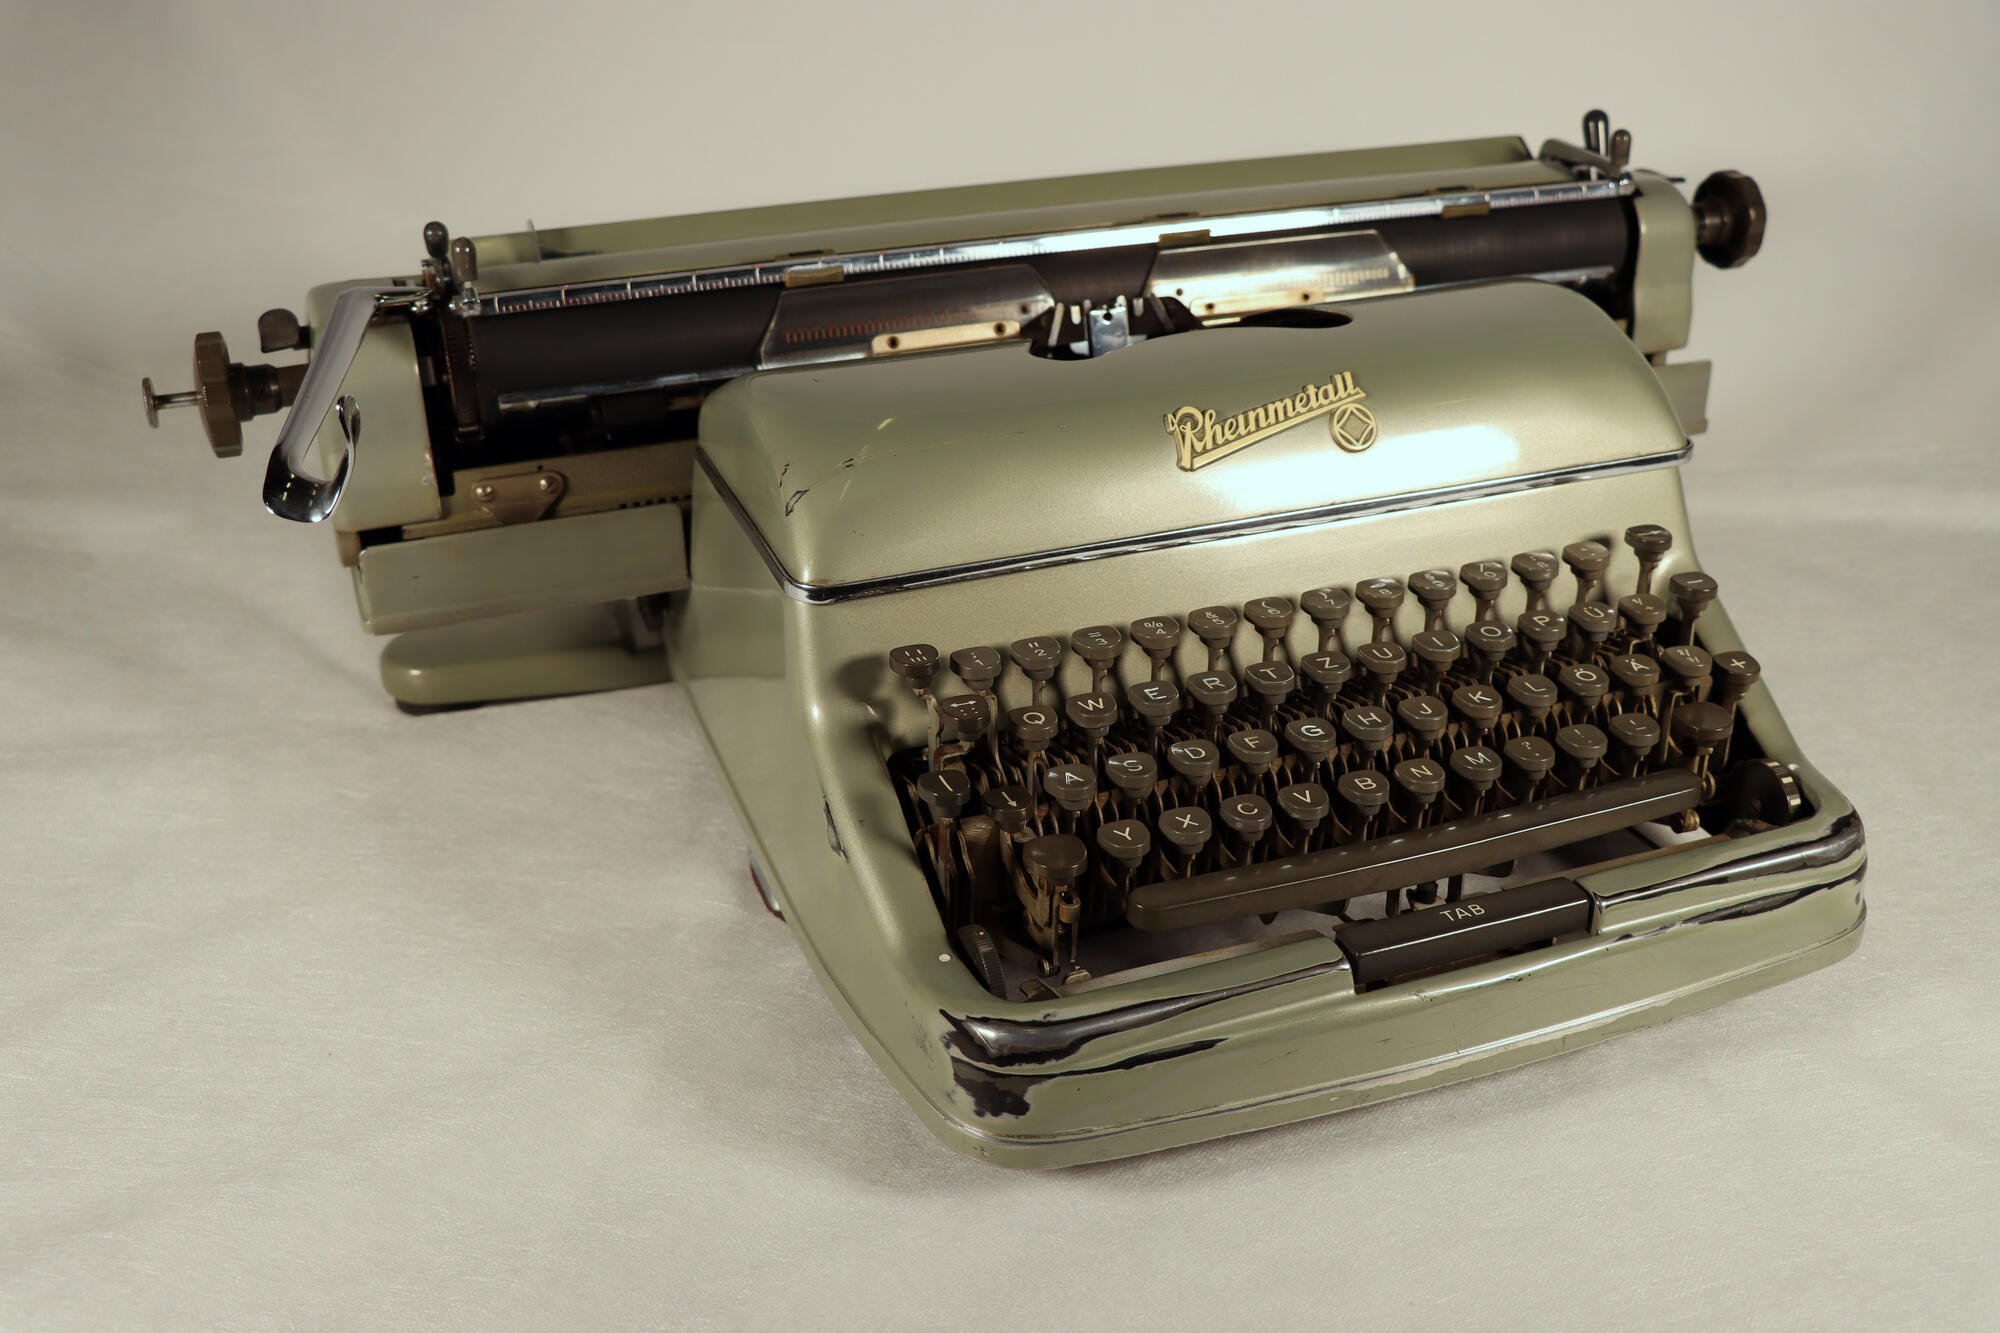 Schreibmaschine, Front seitlich (Industriemuseum Chemnitz; Fotografin: Carola Hütcher CC BY-NC-SA)